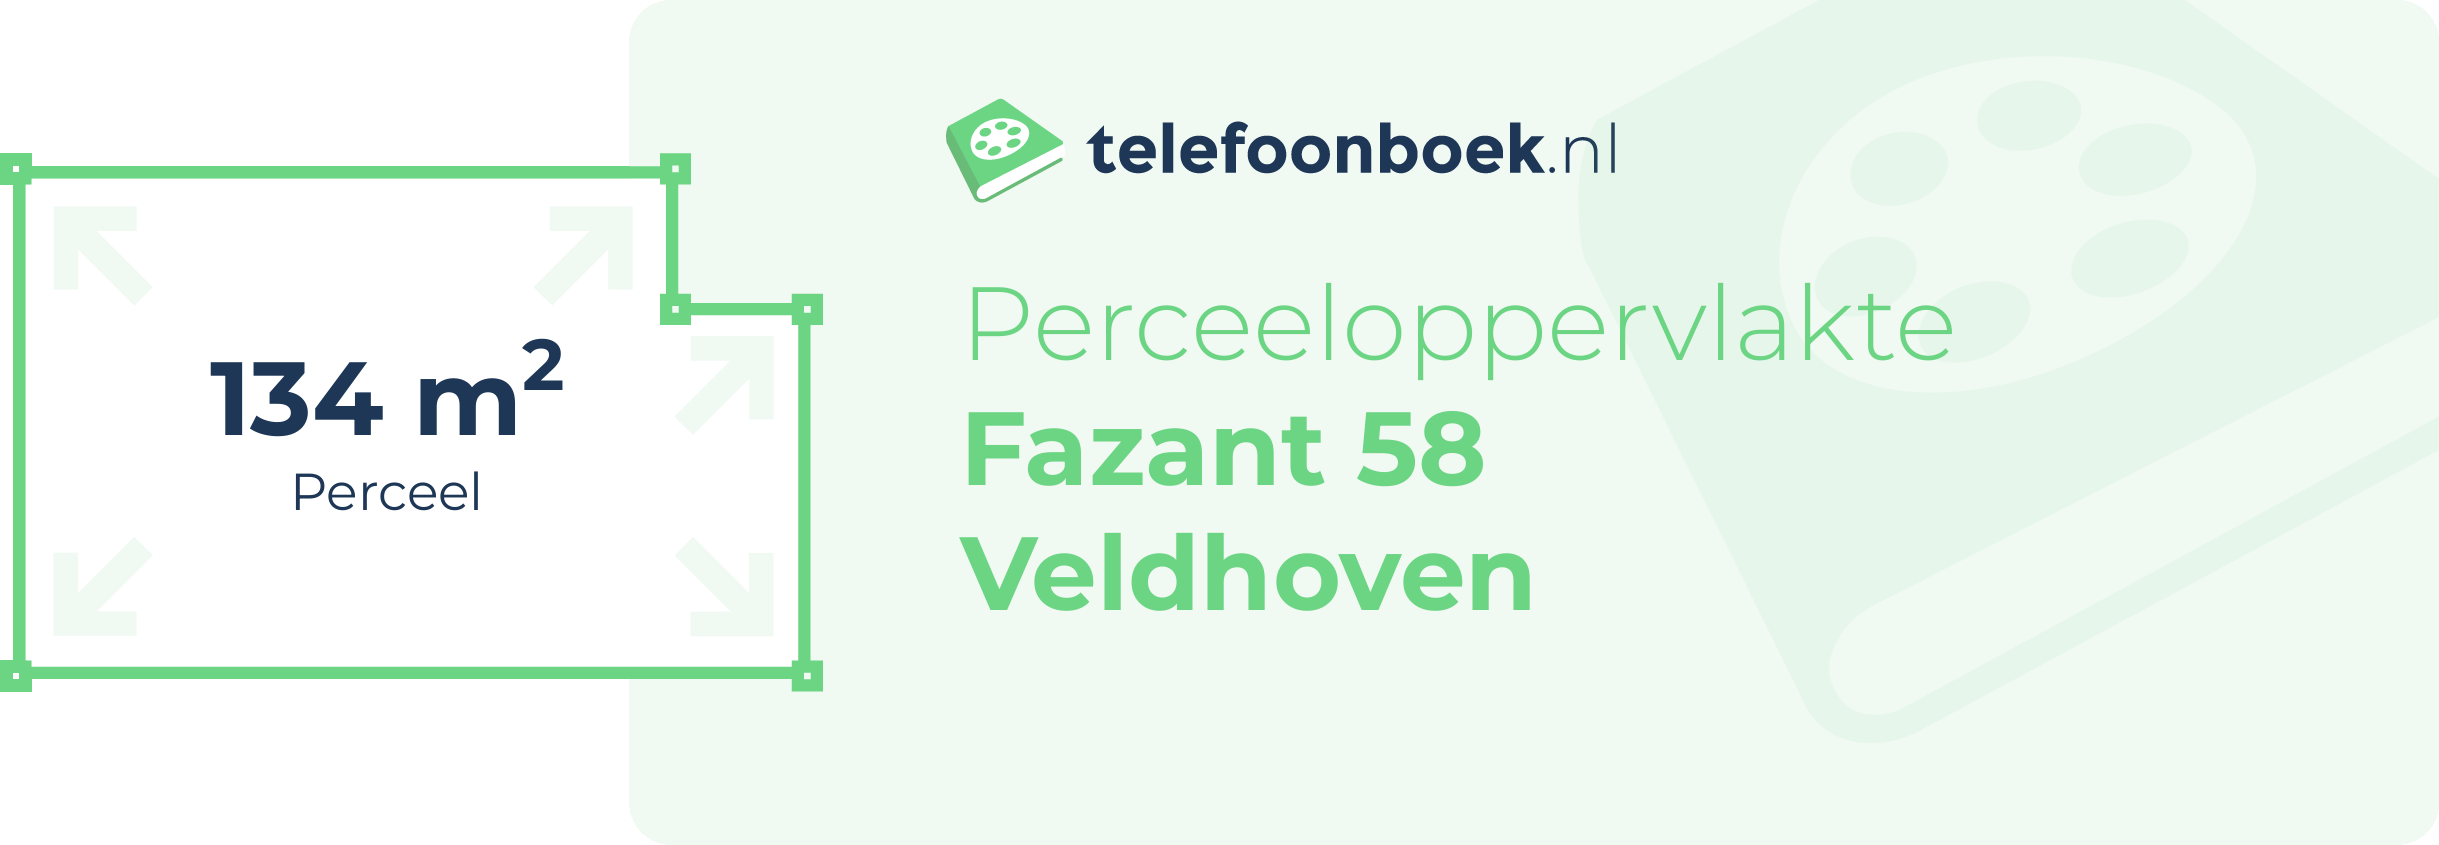 Perceeloppervlakte Fazant 58 Veldhoven